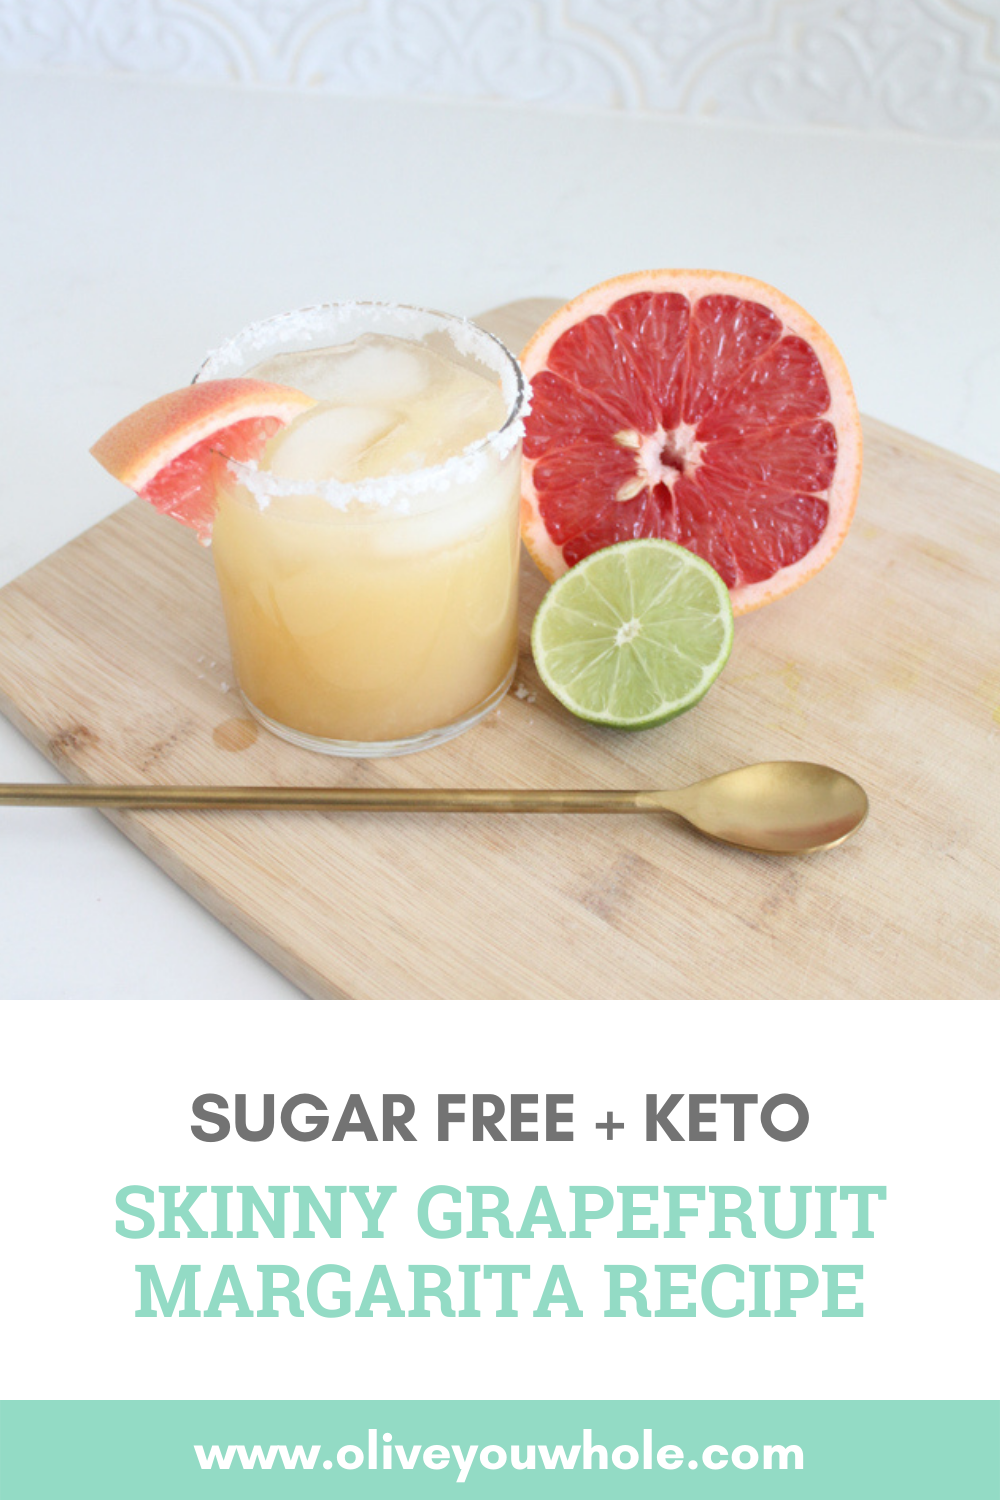 Skinny Grapefruit Margarita Recipe Keto Sugar Free